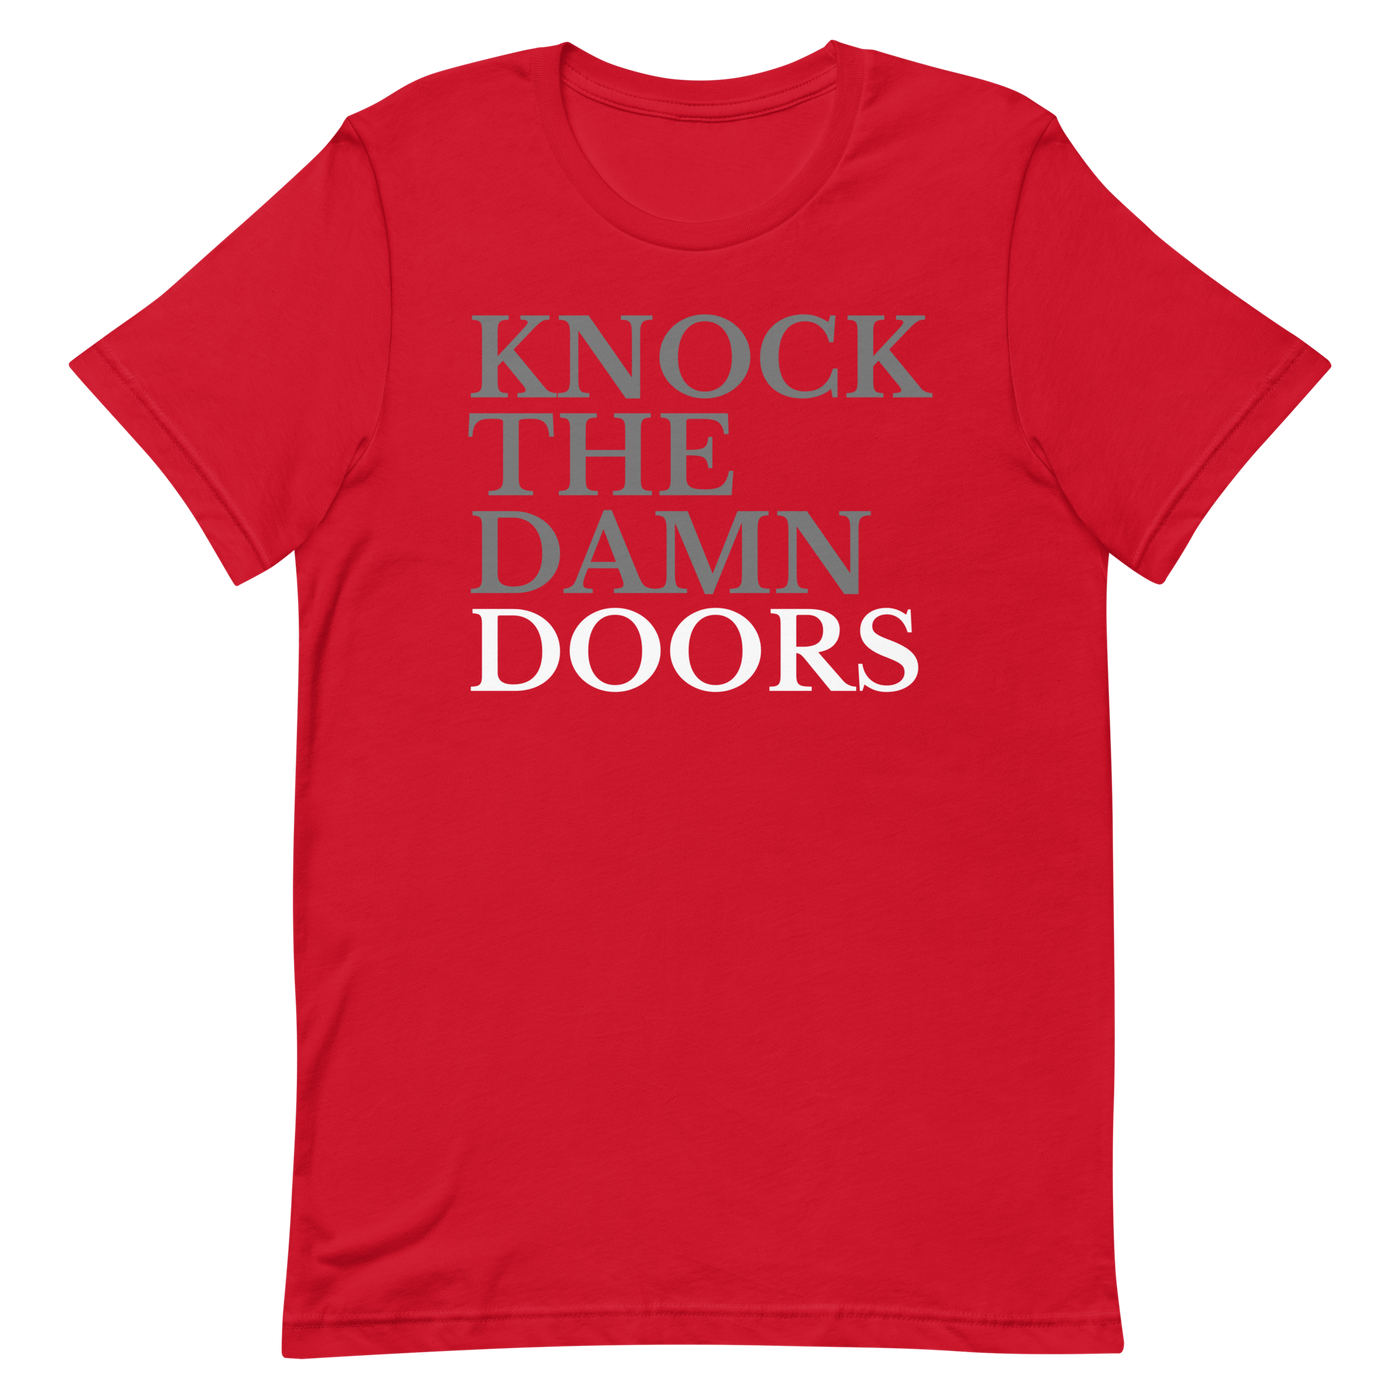 Knock The Damn Doors